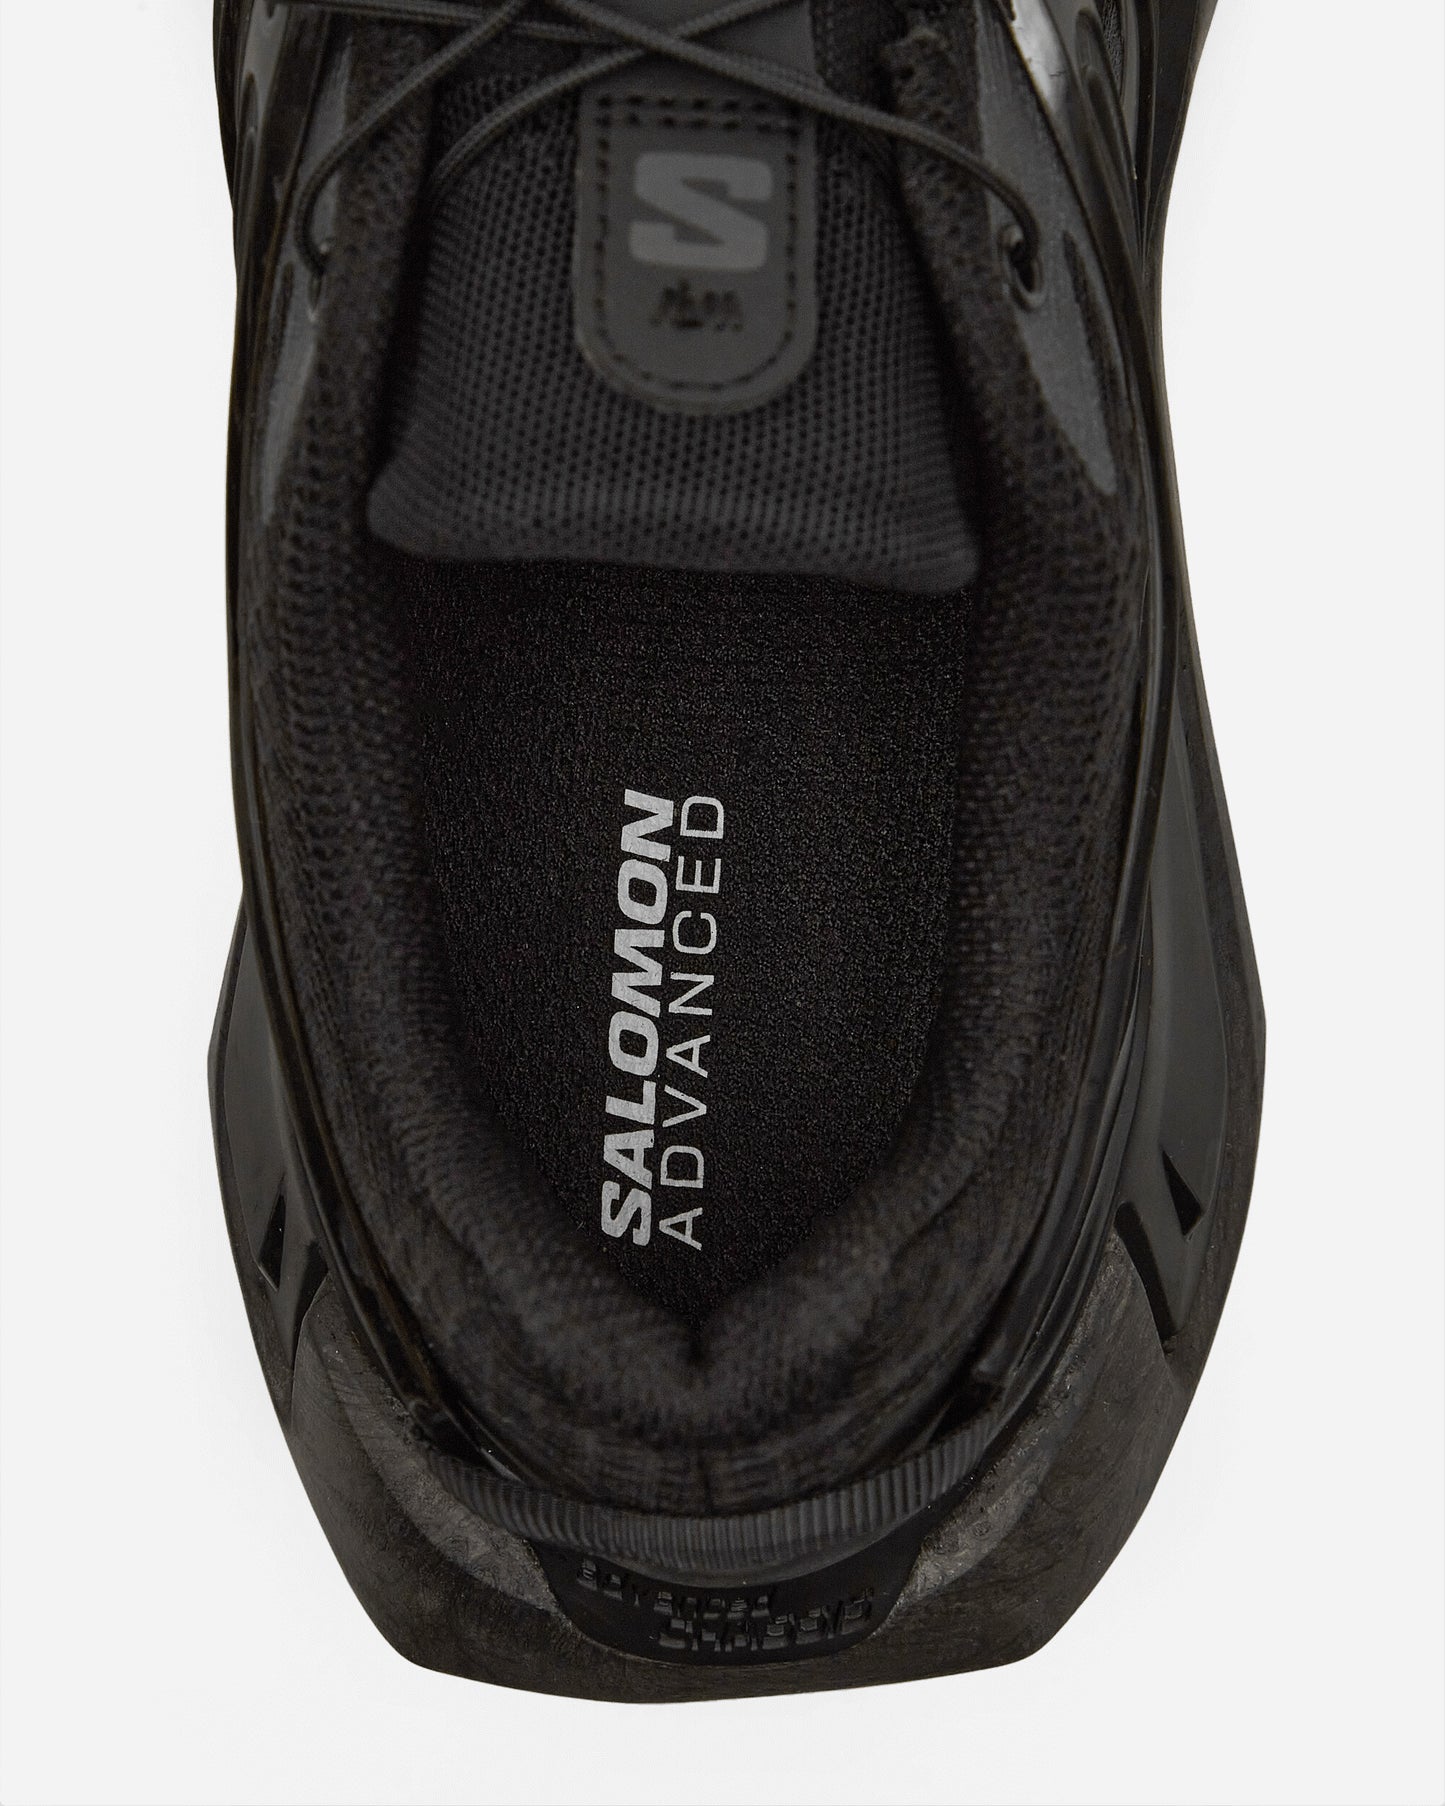 Salomon Xt Pu.Re Advanced Black/Black/Phantom Sneakers Low L47446000